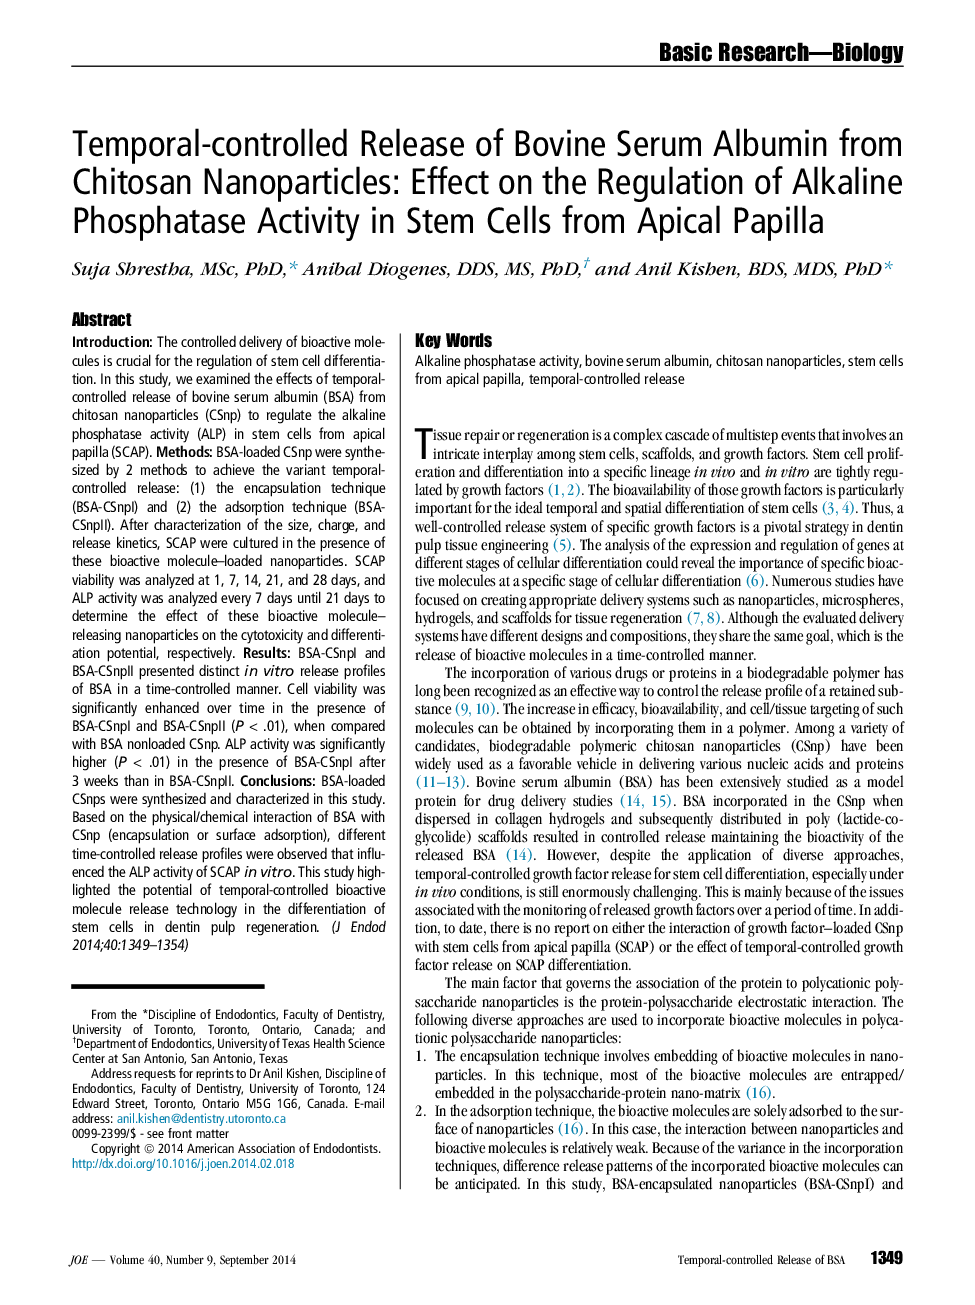 کنترل زمان آزاد آلبومین سرم گاو از نانوذرات چیتوزان: تاثیر در تنظیم فعالیت فسفاتاز قلیایی در سلول های بنیادی پاپیل آپیکال 